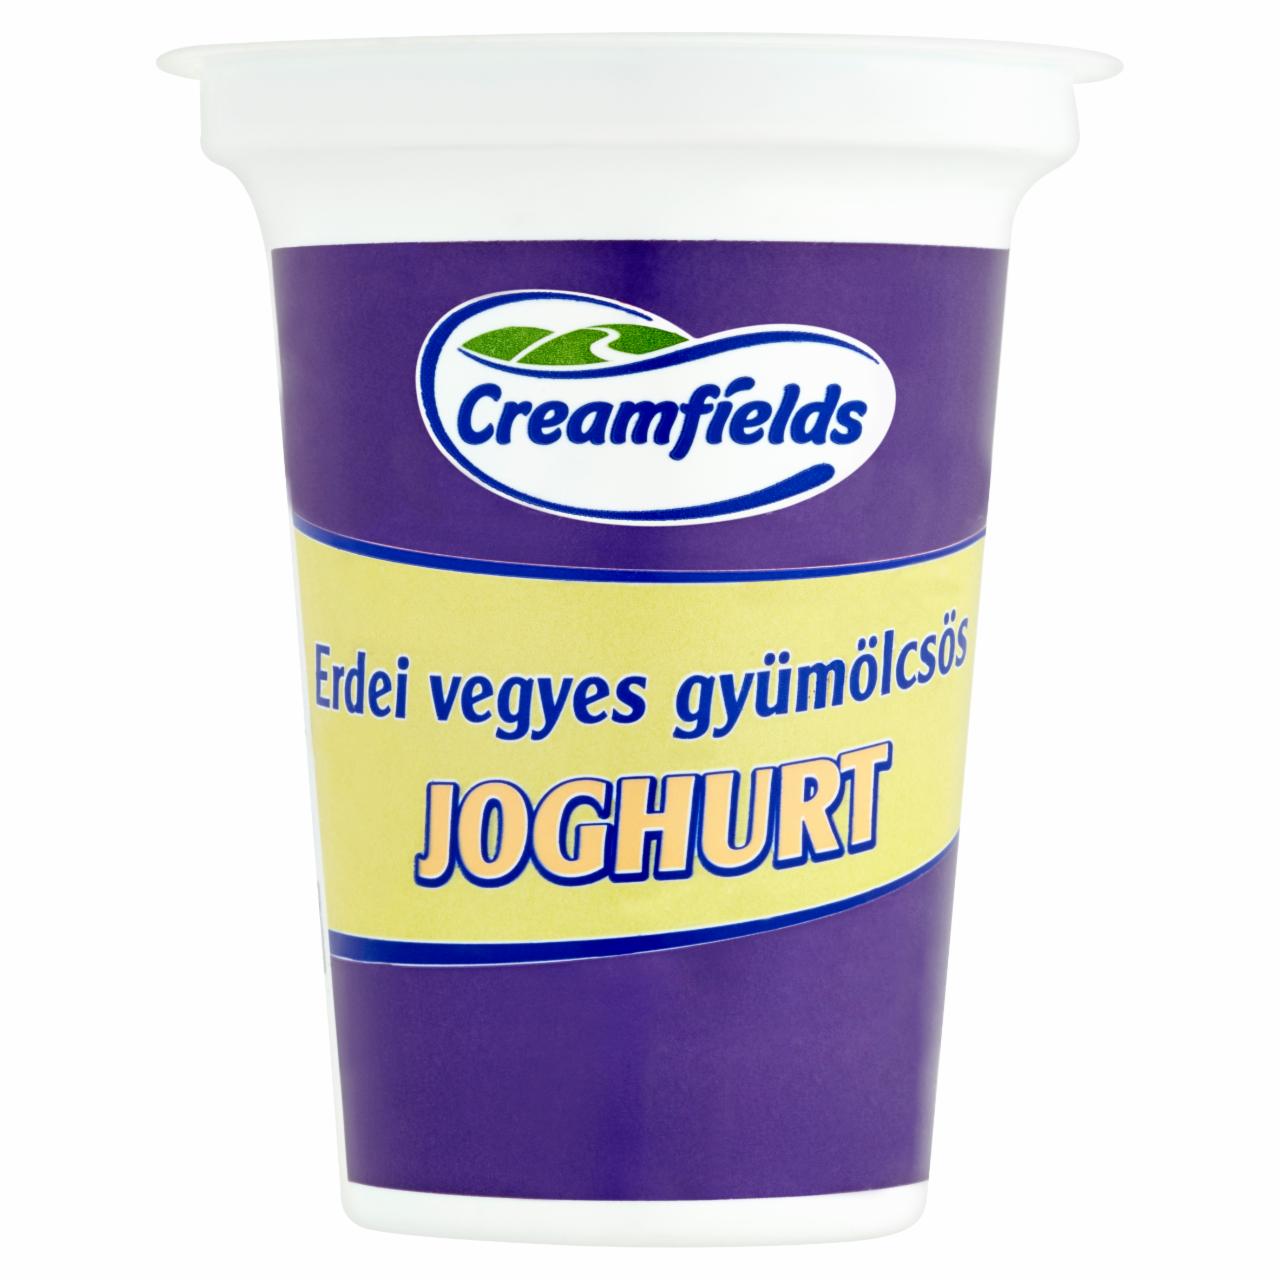 Képek - Creamfields erdei vegyes gyümölcsös joghurt 140 g